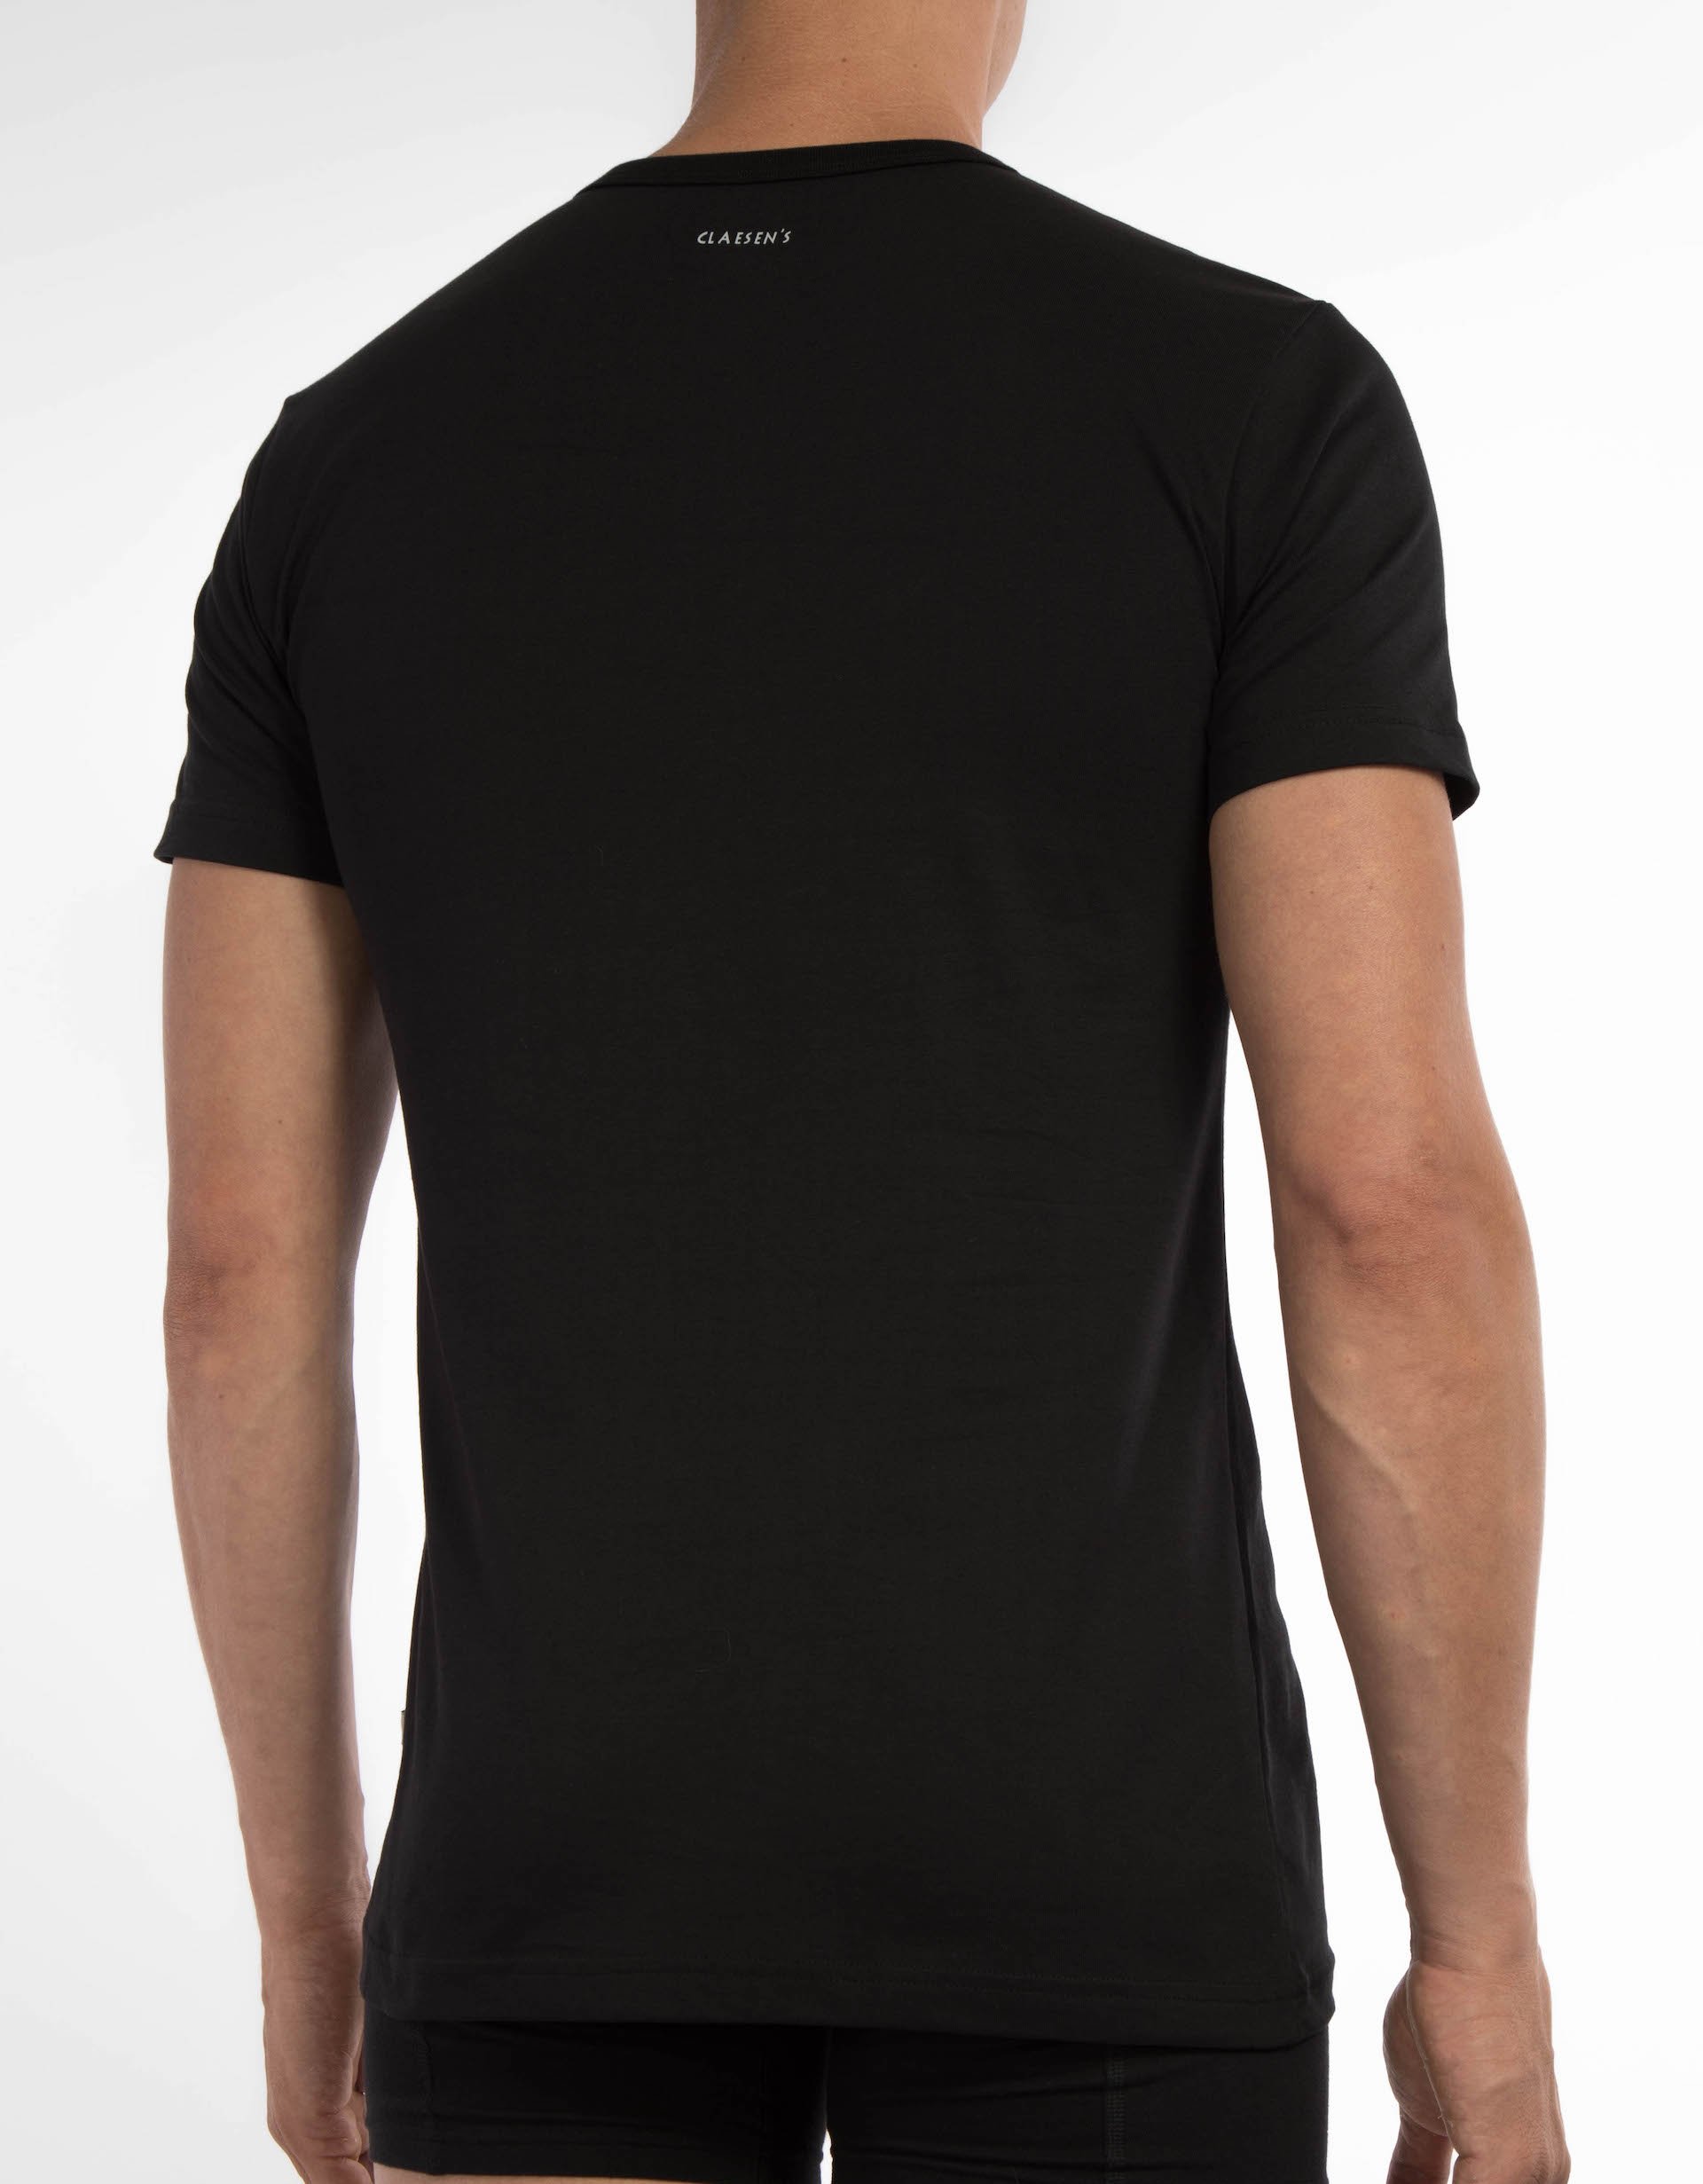 T Shirt Black  2 pack